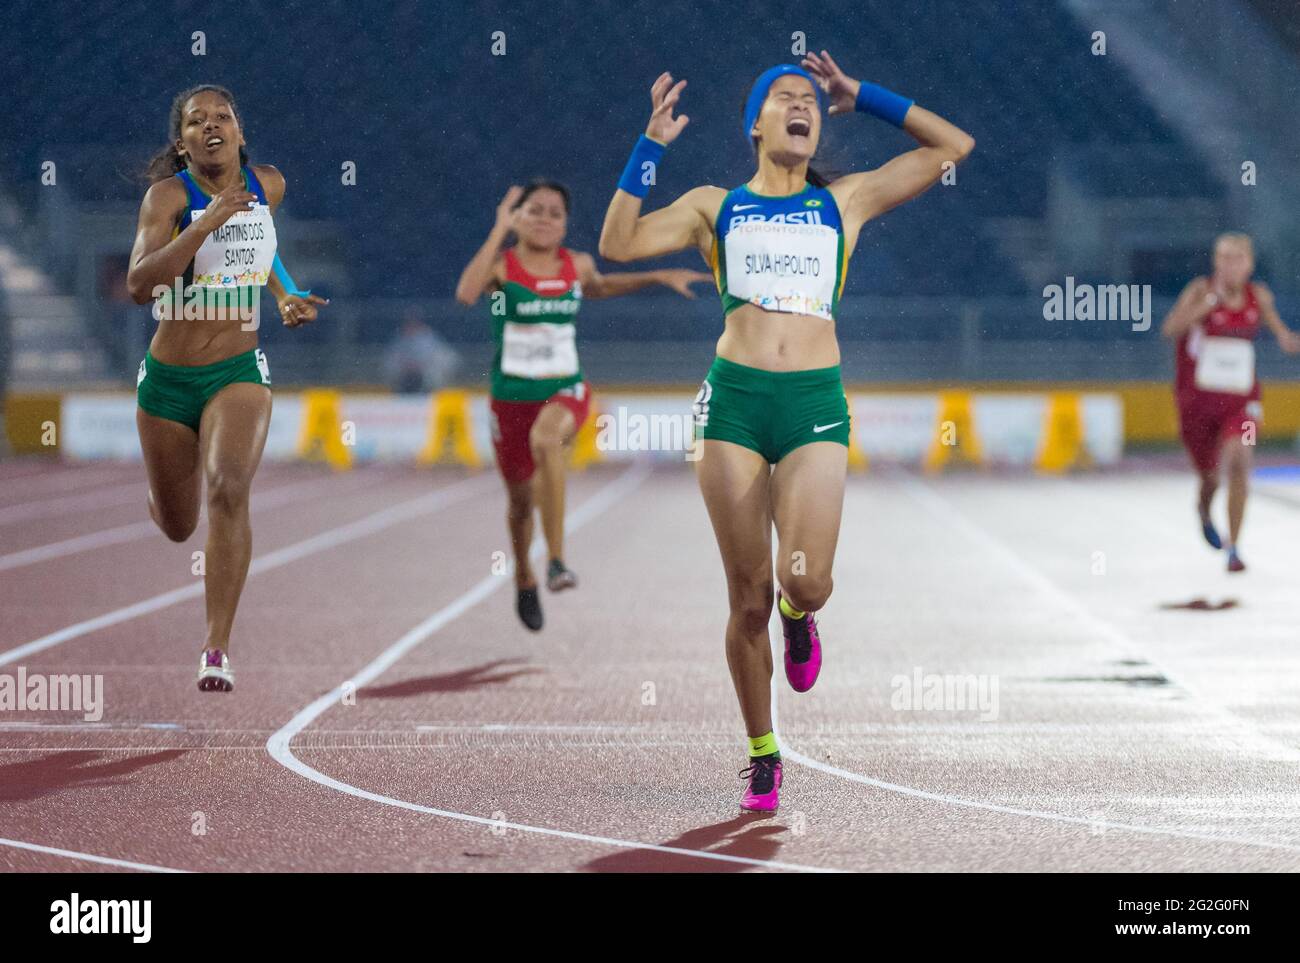 Die brasilianische Athletin Veronica Silva Hipolito reagierte nach dem Sieg bei den Parapan American Games 2015. Die Parapan American Games 2015 c Stockfoto